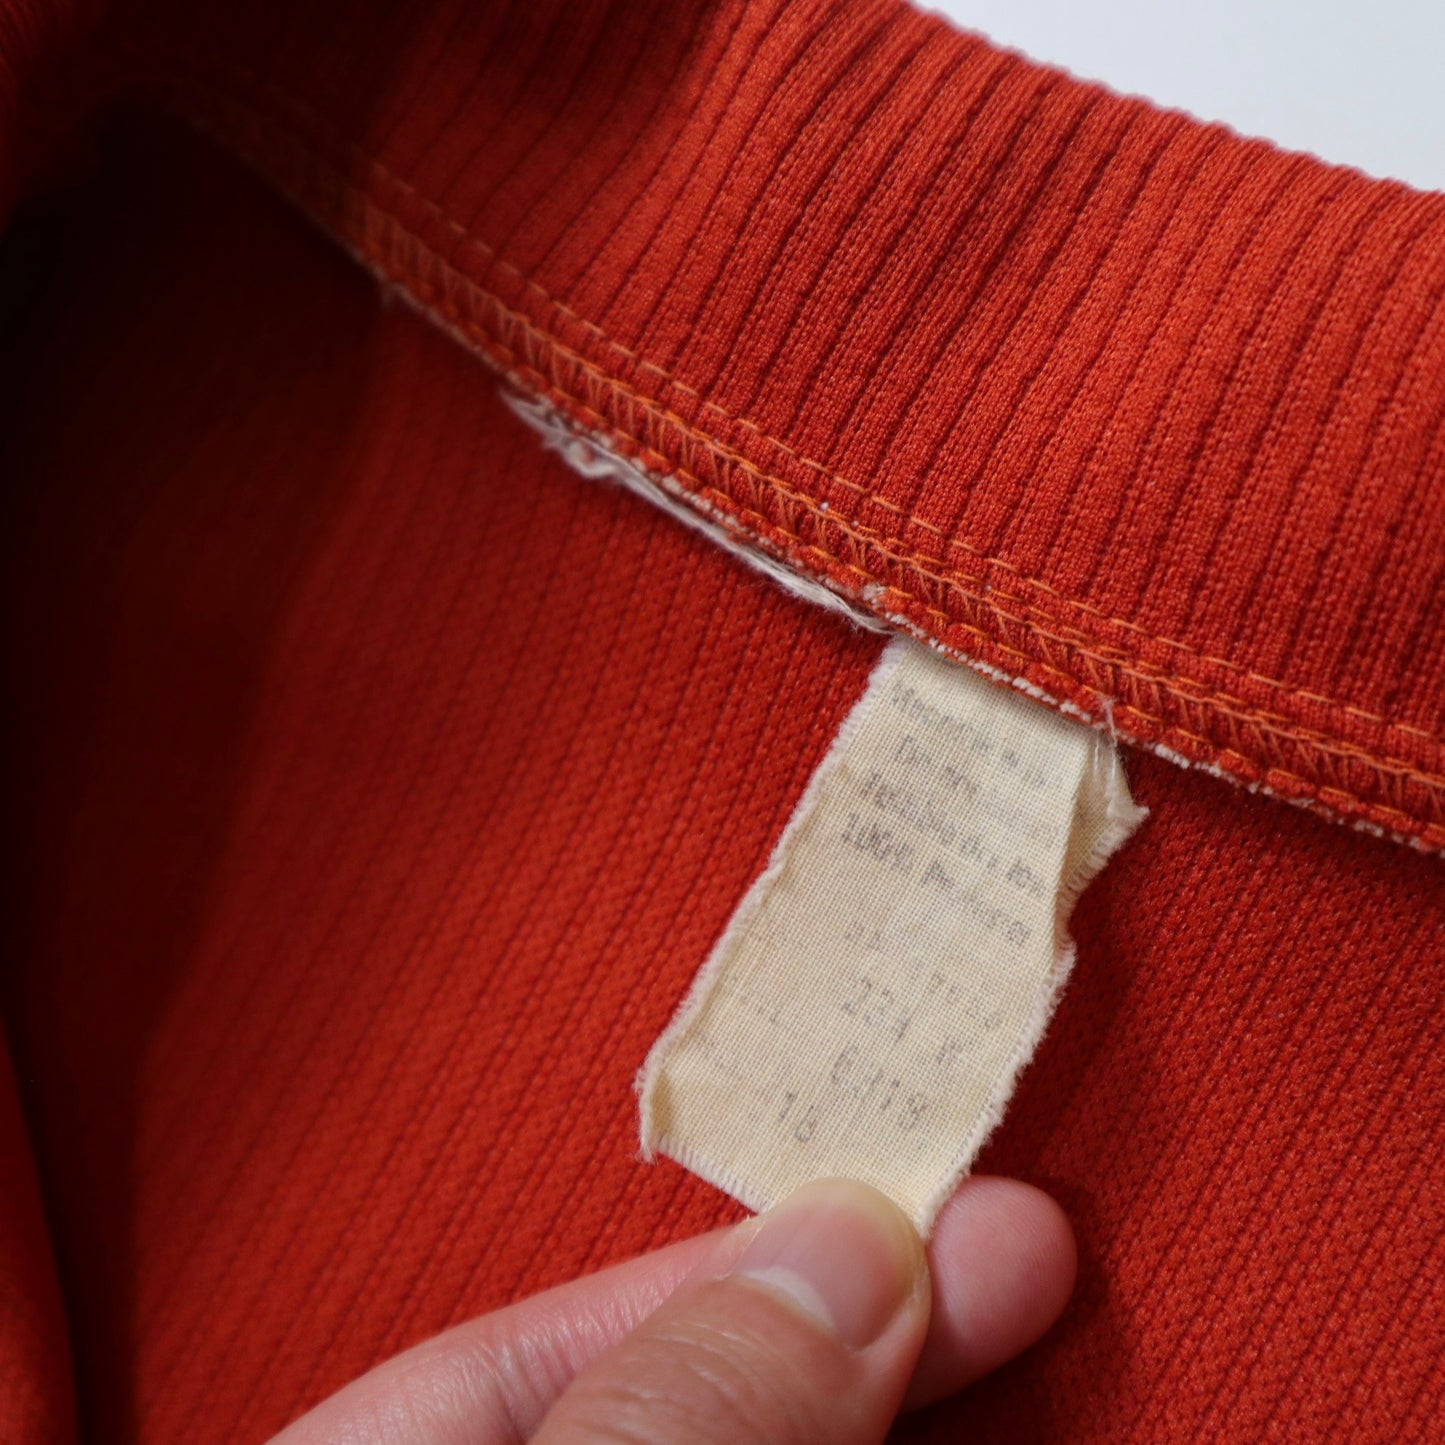 1970s 橘紅色格紋箭領西部襯衫